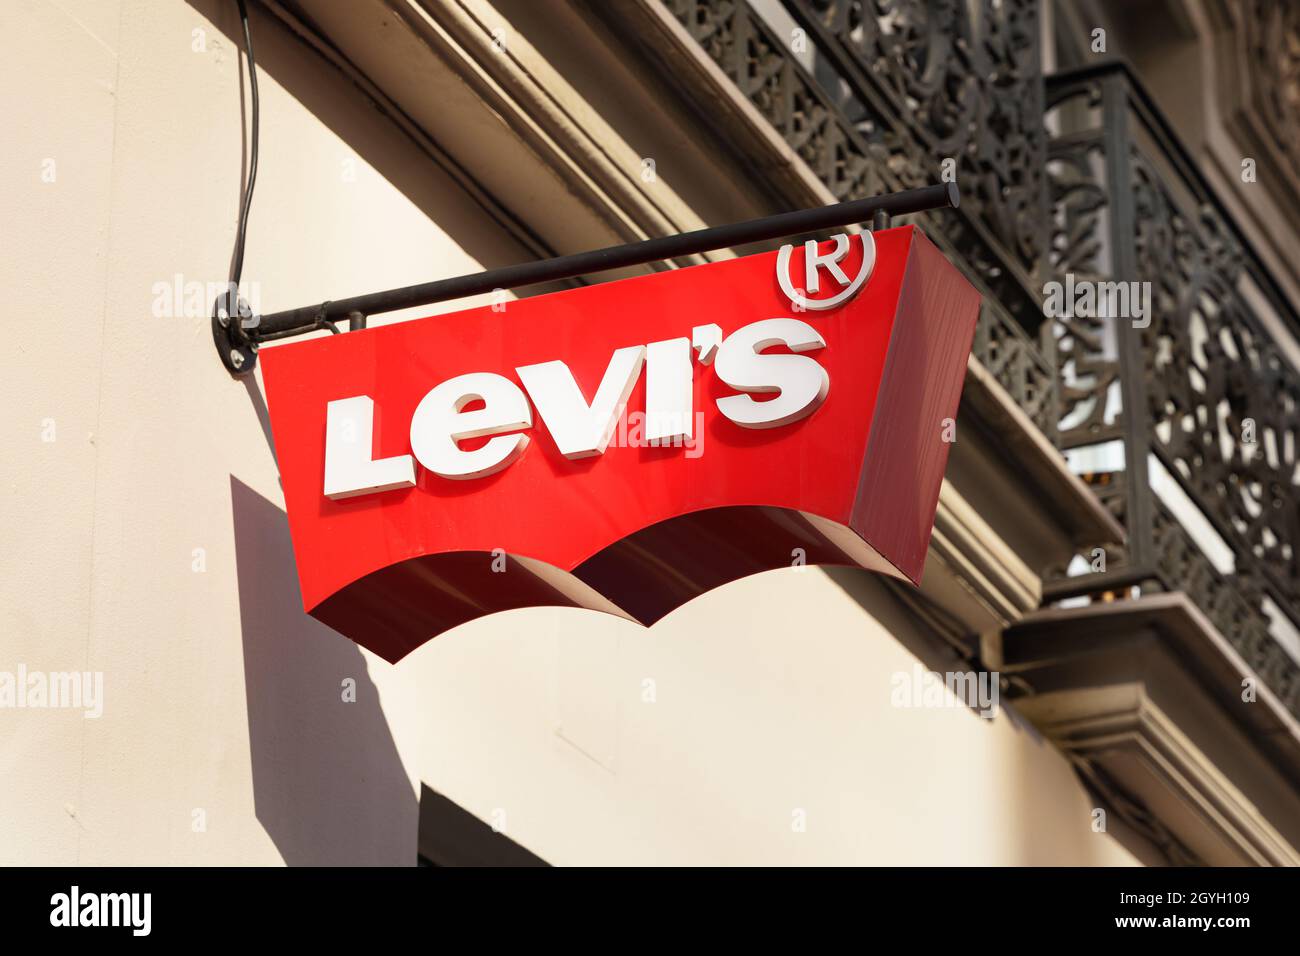 VALENCIA, ESPAÑA - 07 DE OCTUBRE de 2021: Levi Strauss & Co. Es una  compañía de ropa americana conocida mundialmente por su marca Levi's de  jeans denim Fotografía de stock - Alamy